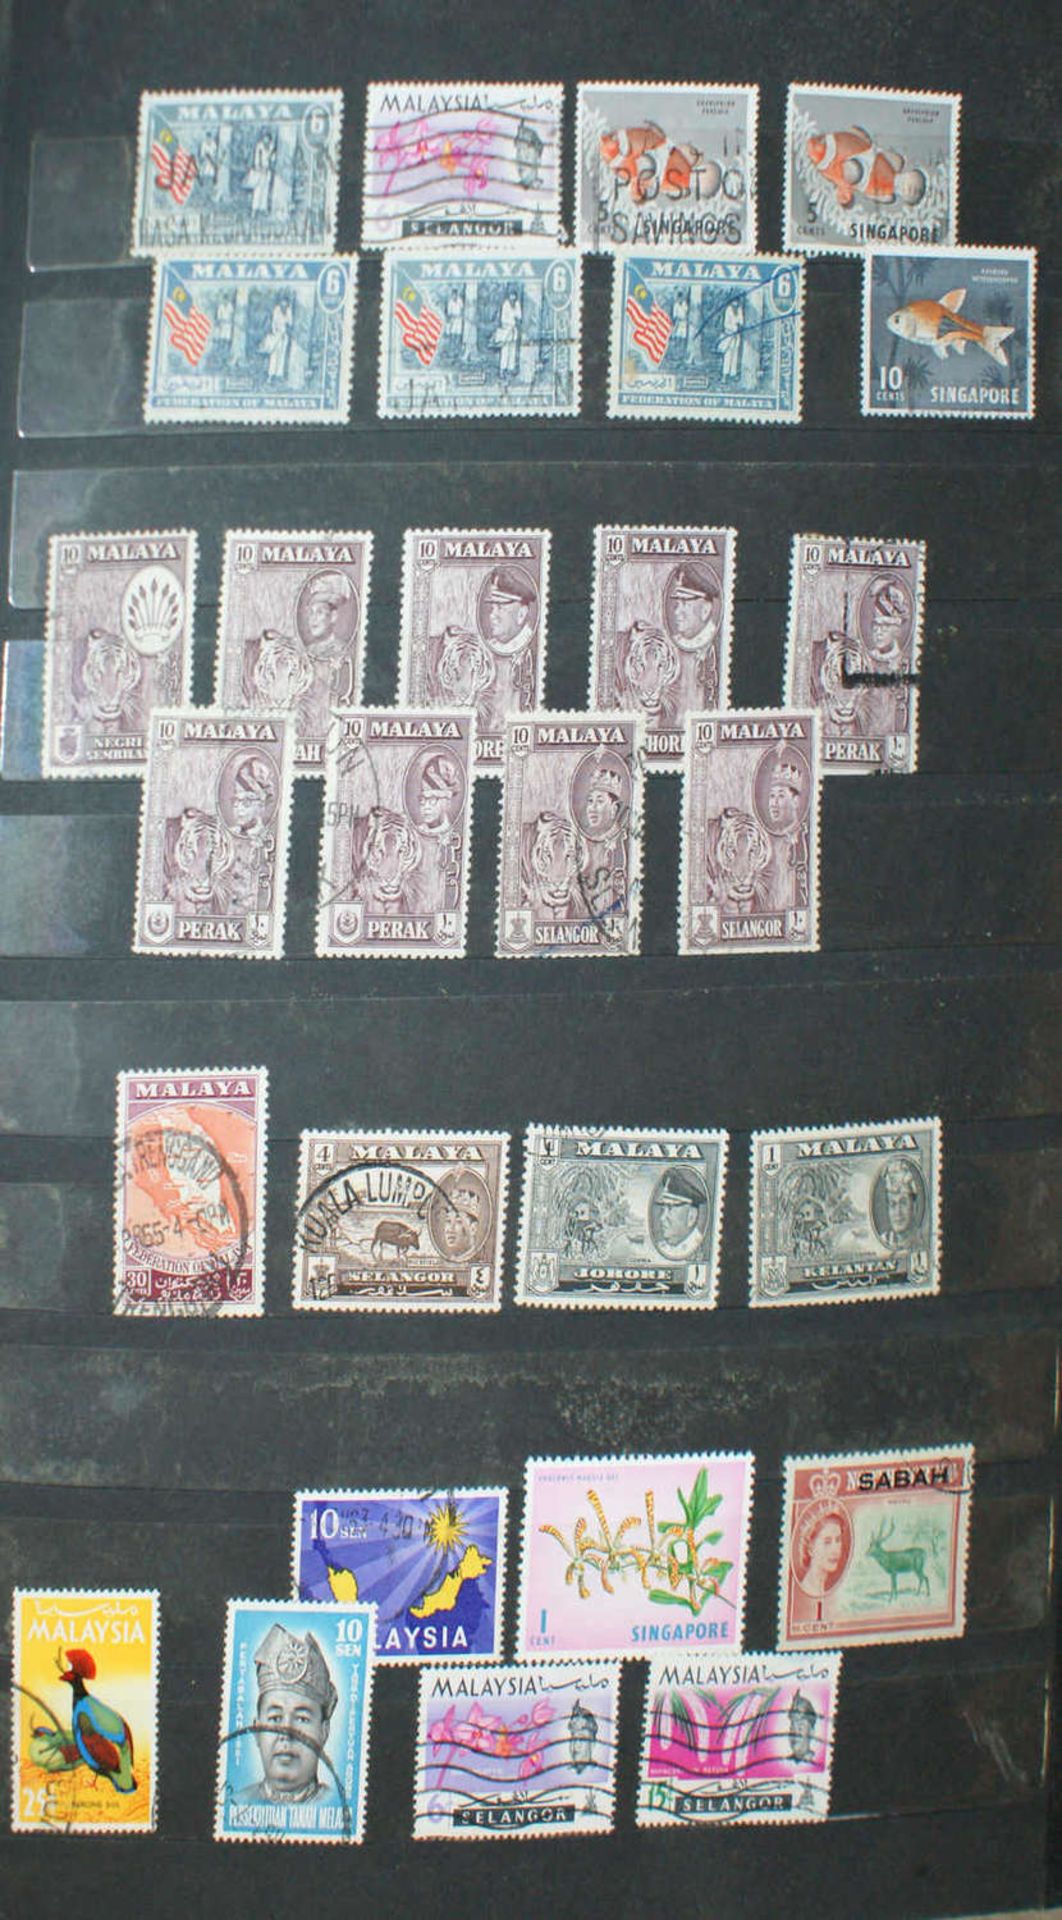 Alle Welt - Briefmarken Dubletten Konvolut, bestehend aus 4 Alben, teilweise schlecht gelagert. - Bild 4 aus 6